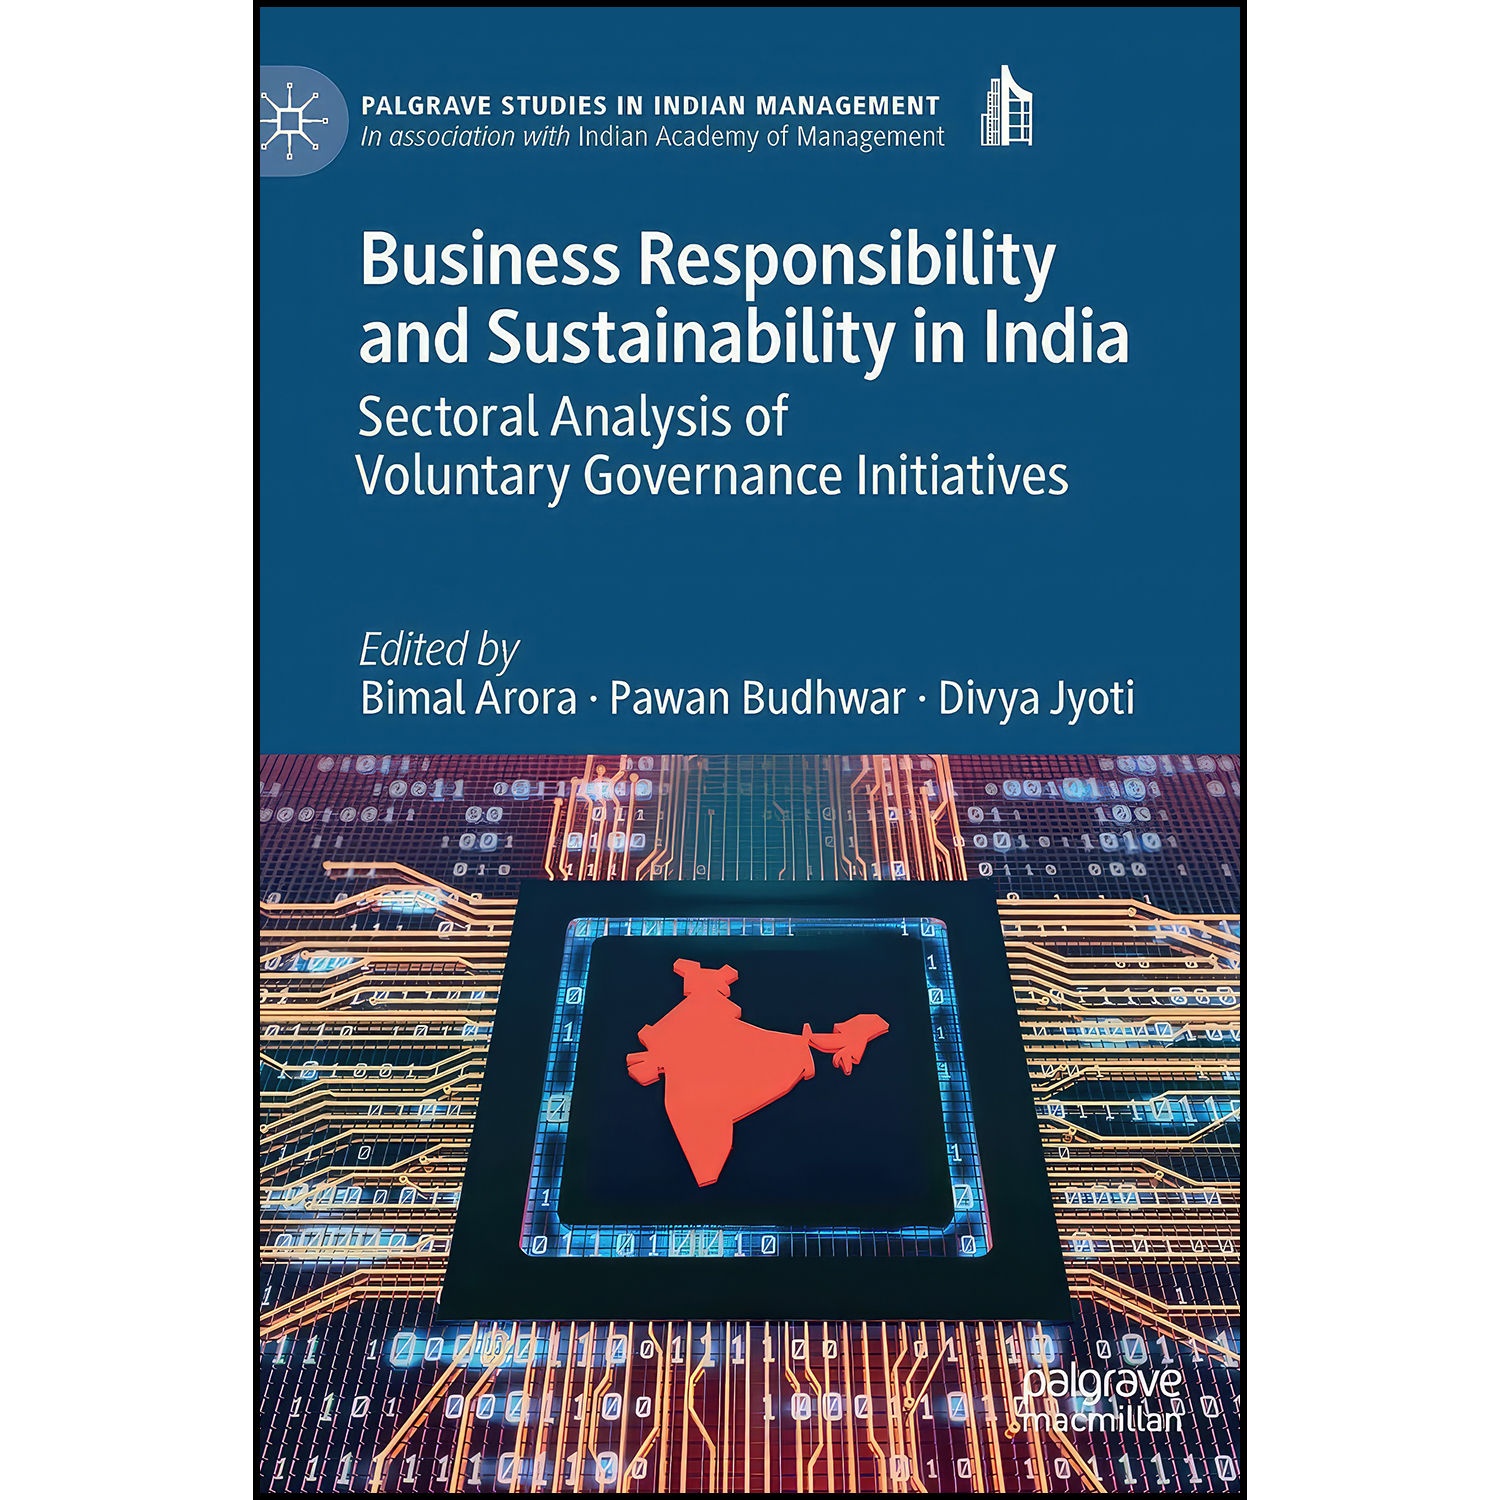 کتاب Business Responsibility and Sustainability in India اثر جمعي از نويسندگان انتشارات Palgrave Macmillan